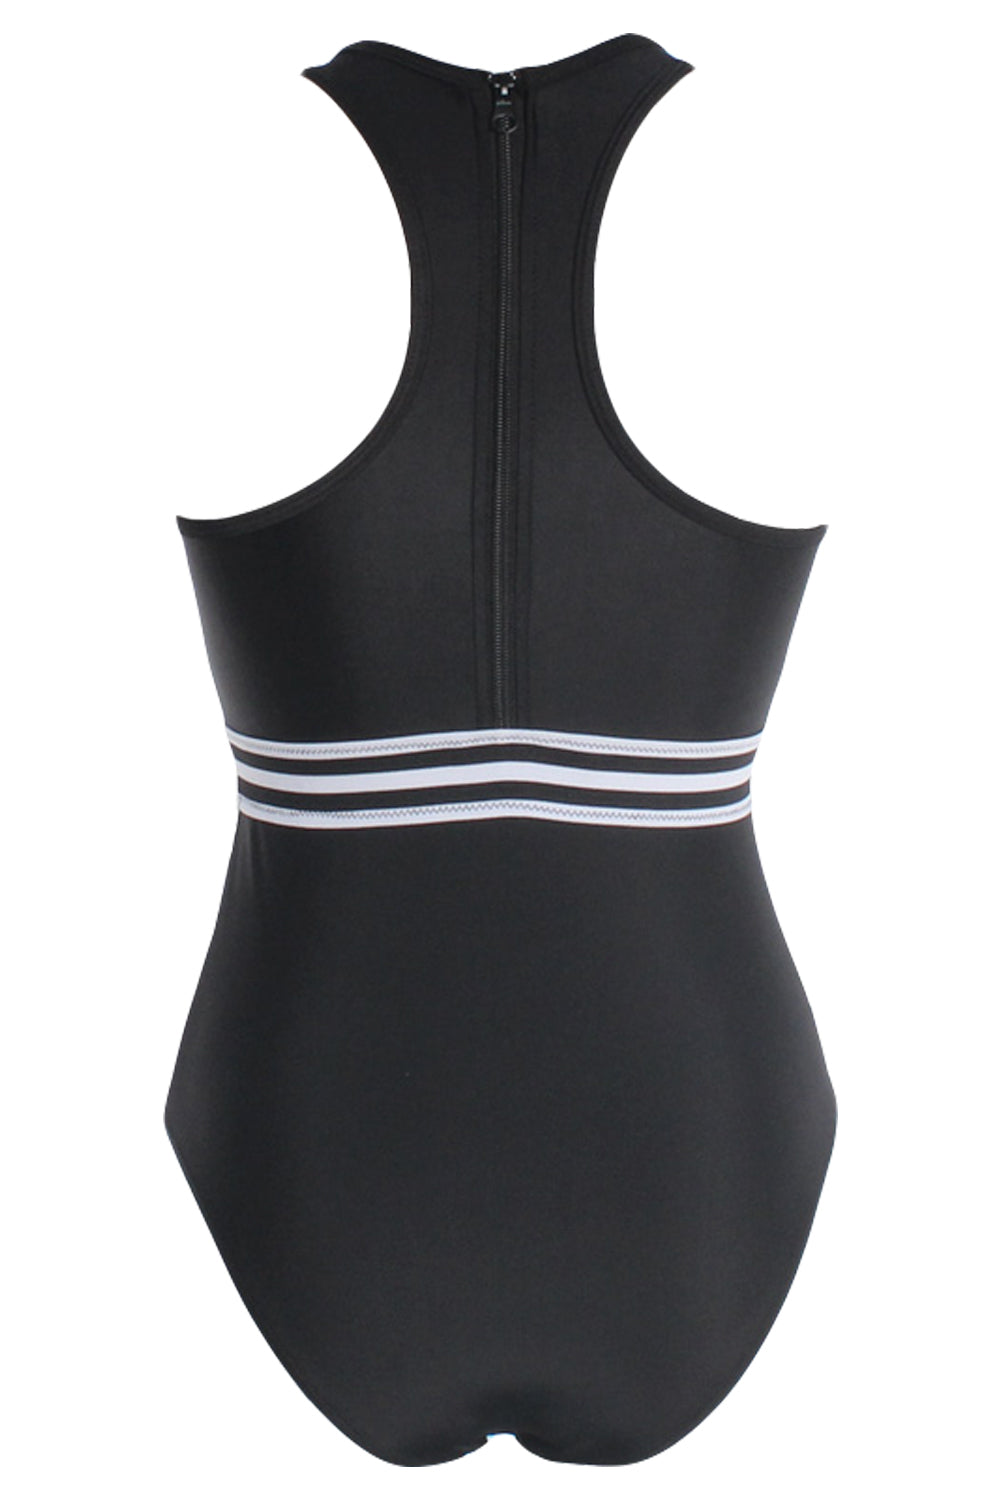 Iyasson Black See Through High-neckline One-piece Swimsuit